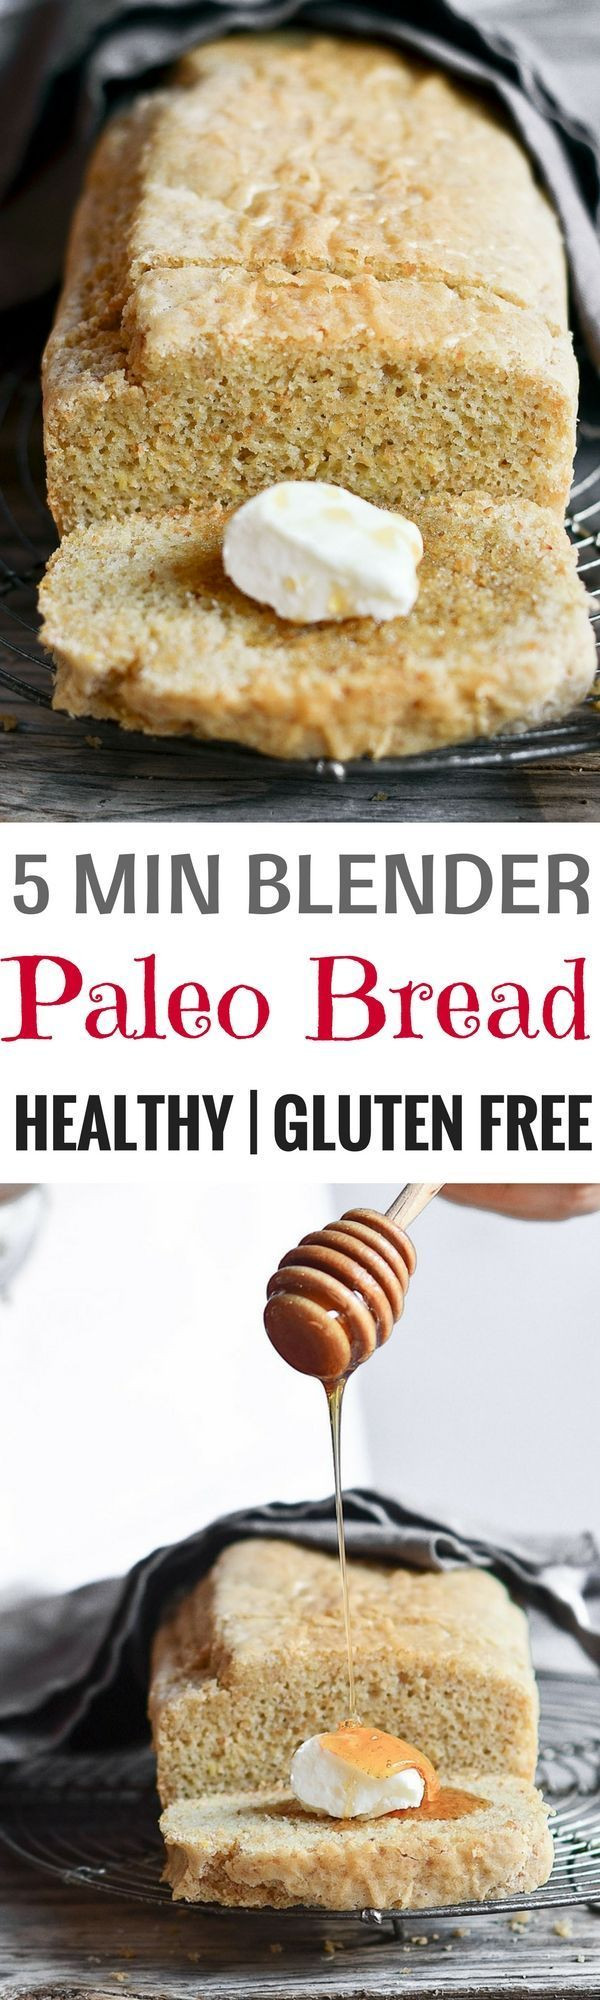 Is Gluten Free Bread Healthy
 Healthy 5 Minute Gluten Free Paleo Bread Recipe